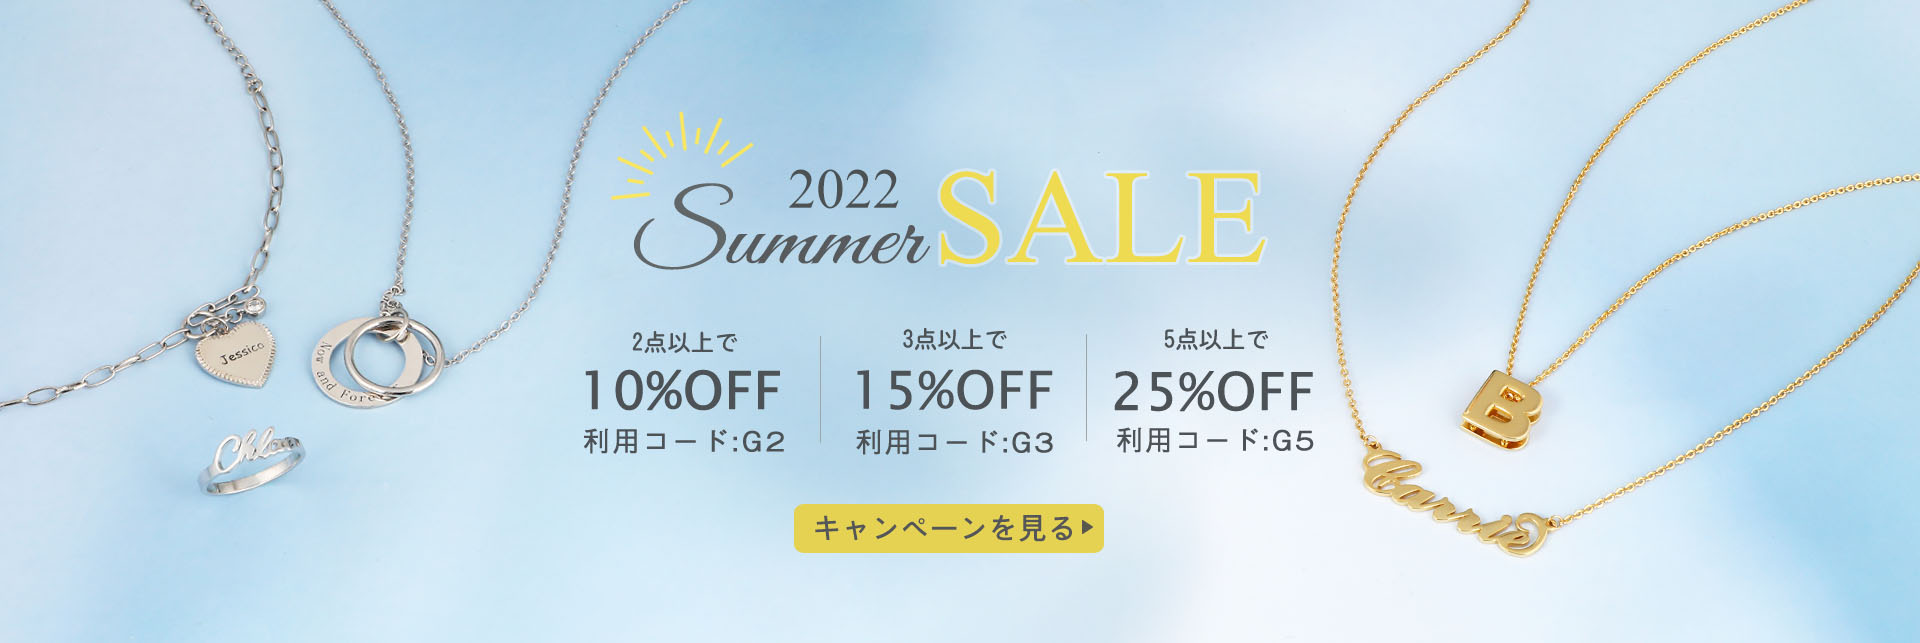 summer-sale-2022